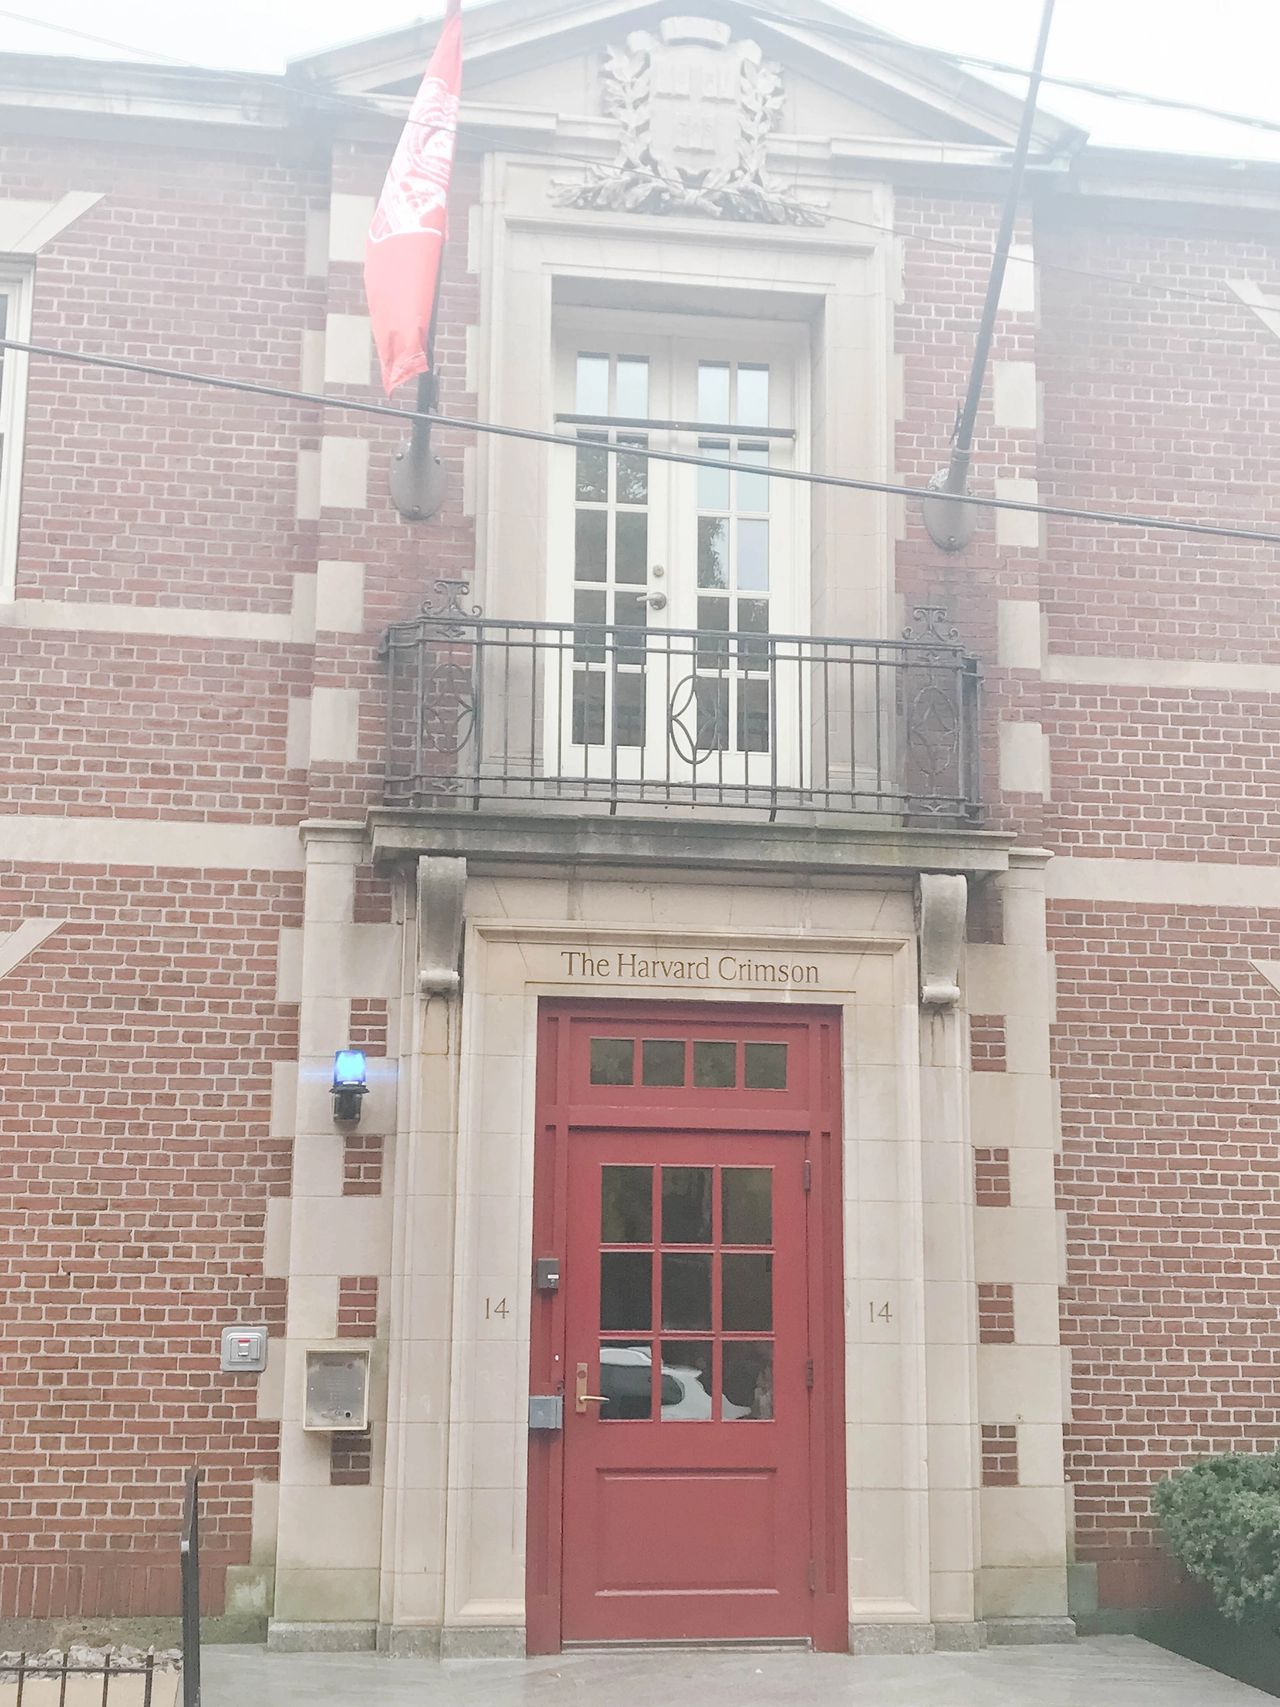 An exterior shot of the Harvard Crimson